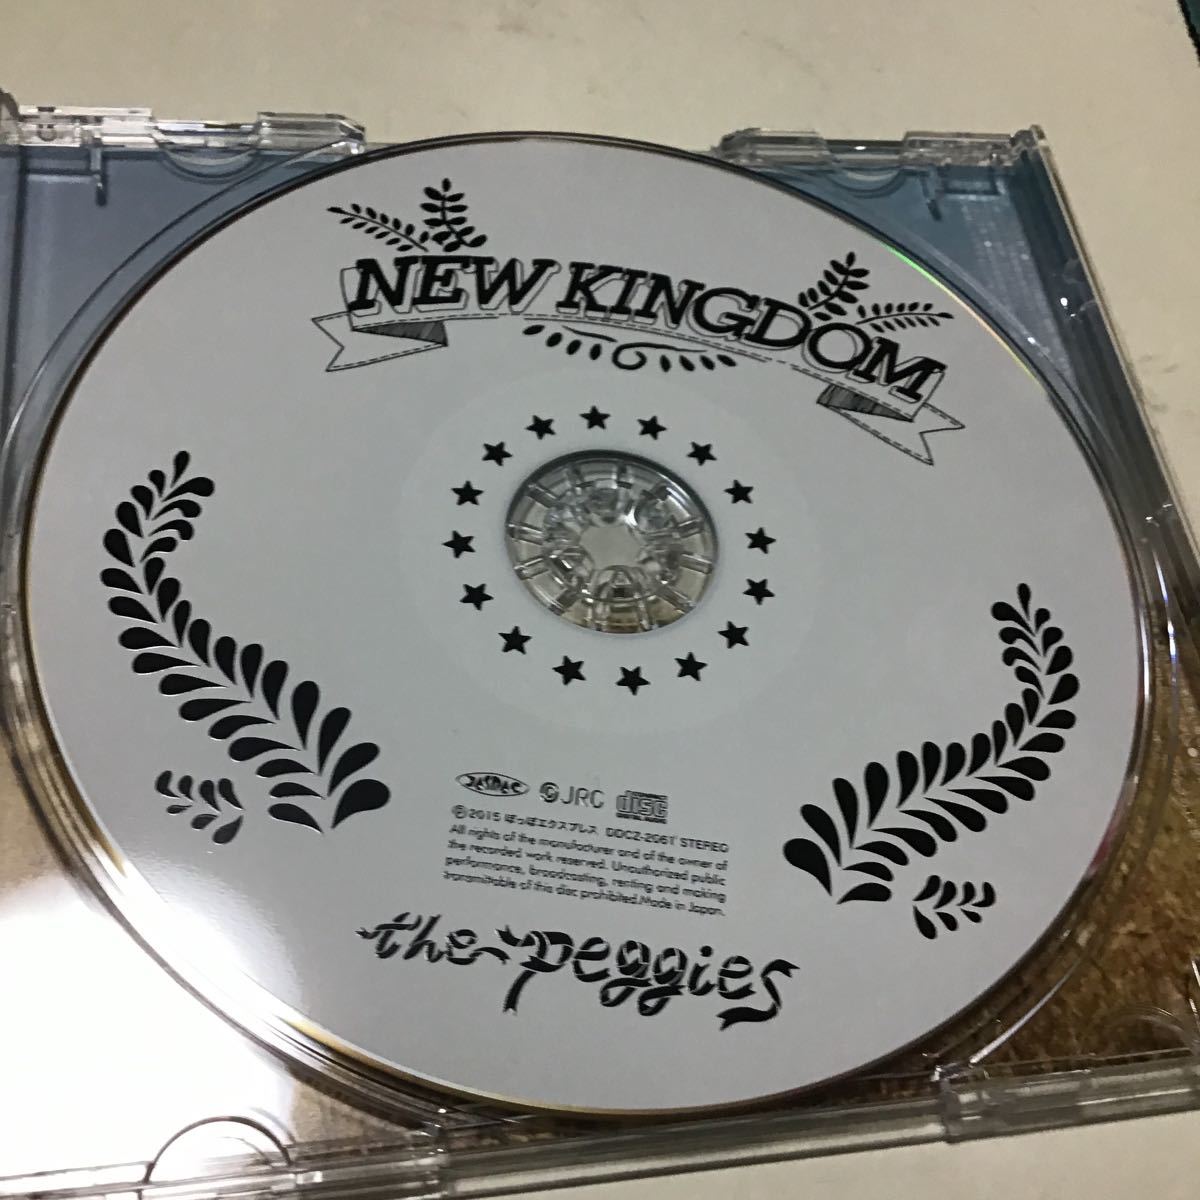 【合わせ買い不可】 NEW KINGDOM CD the peggies_画像6